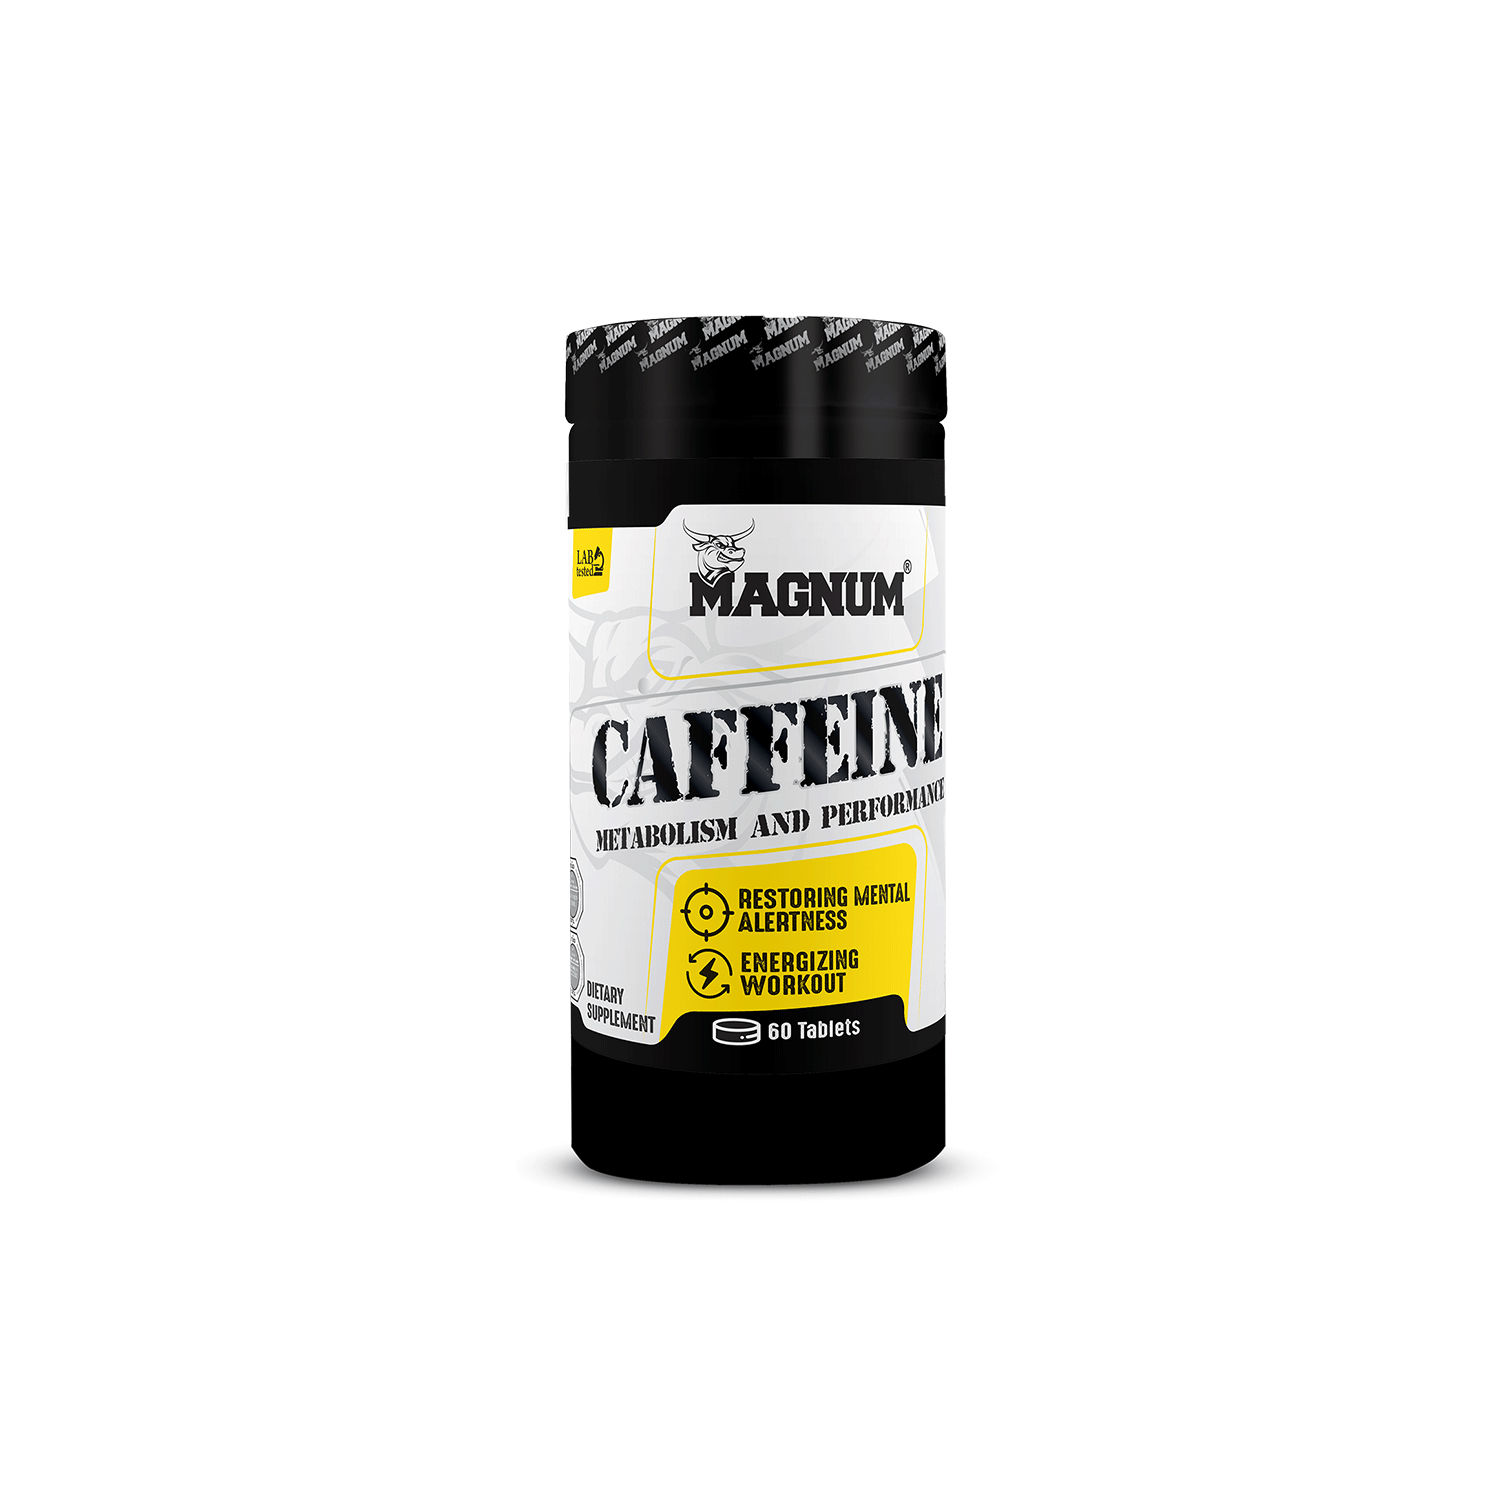 کافئین 60 عددی مگنوم | CAFFEINE 60 tabs MAGNUM